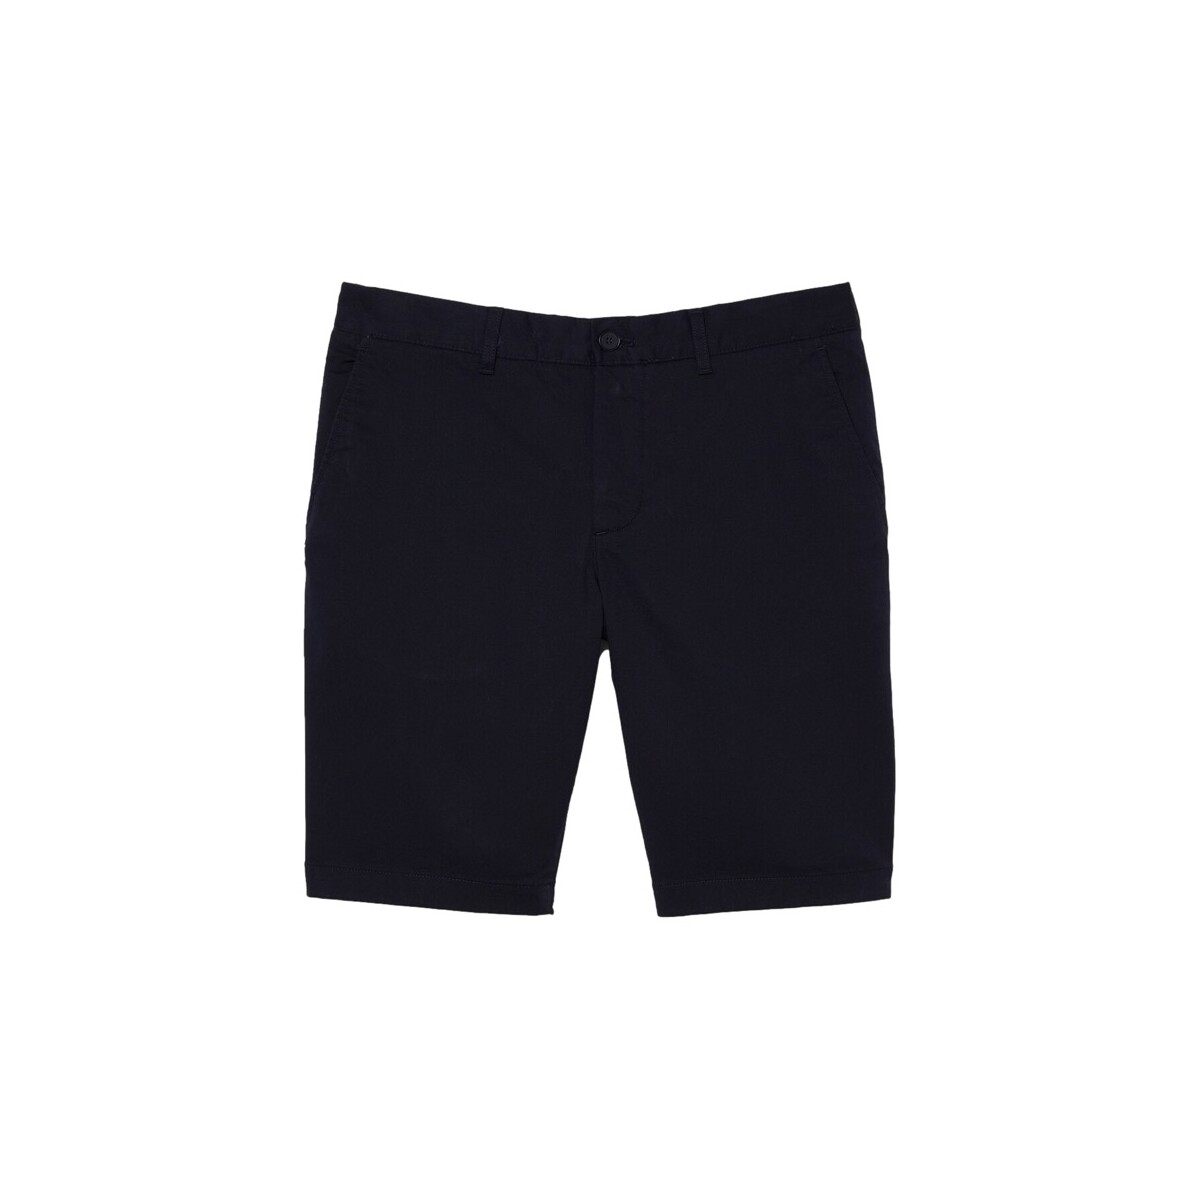 Textil Homem Shorts / Bermudas Lacoste Calções Slim Fit - Blue Marine Azul